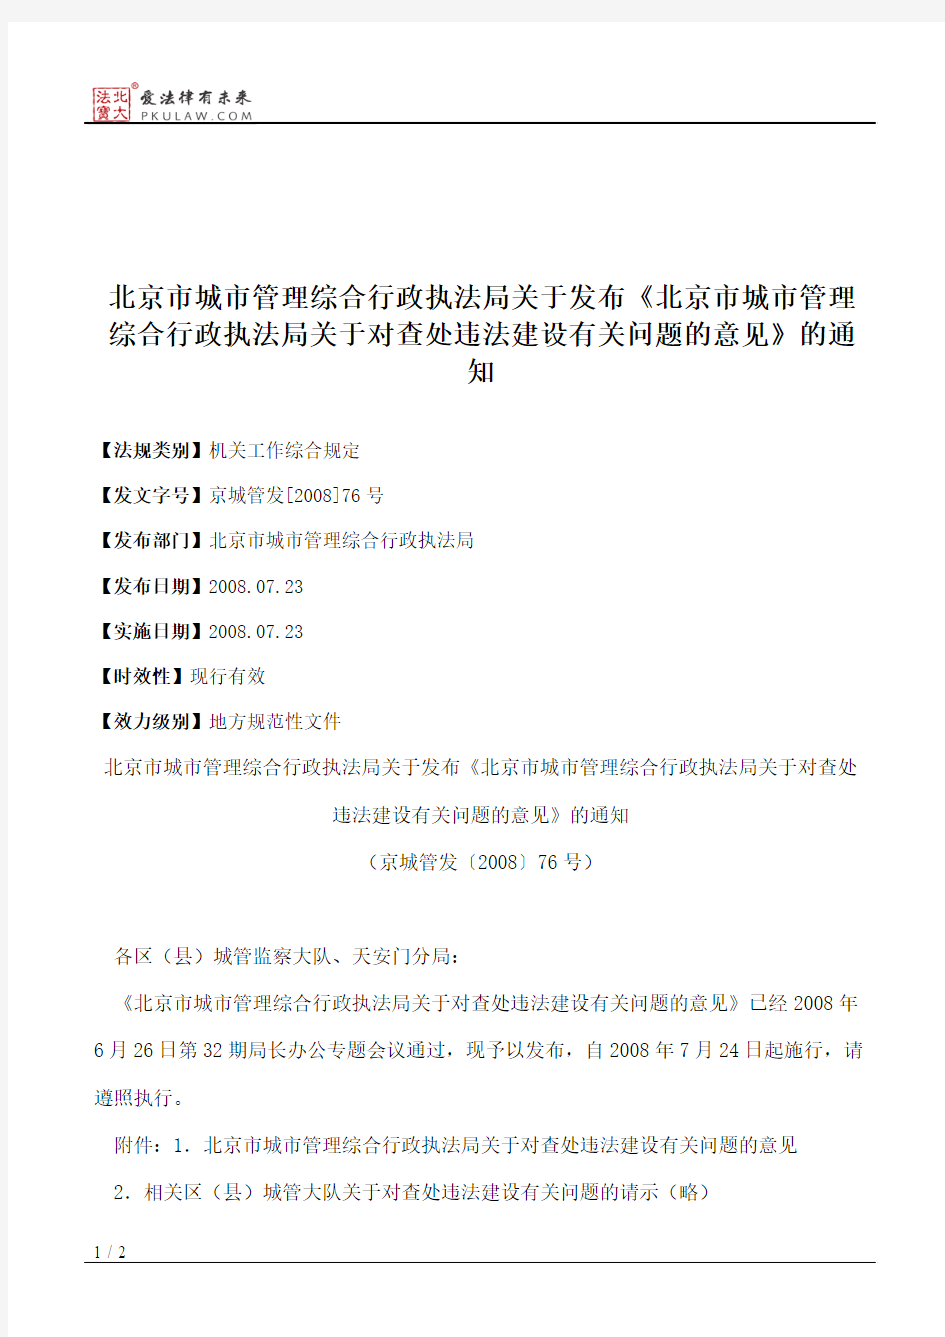 北京市城市管理综合行政执法局关于发布《北京市城市管理综合行政